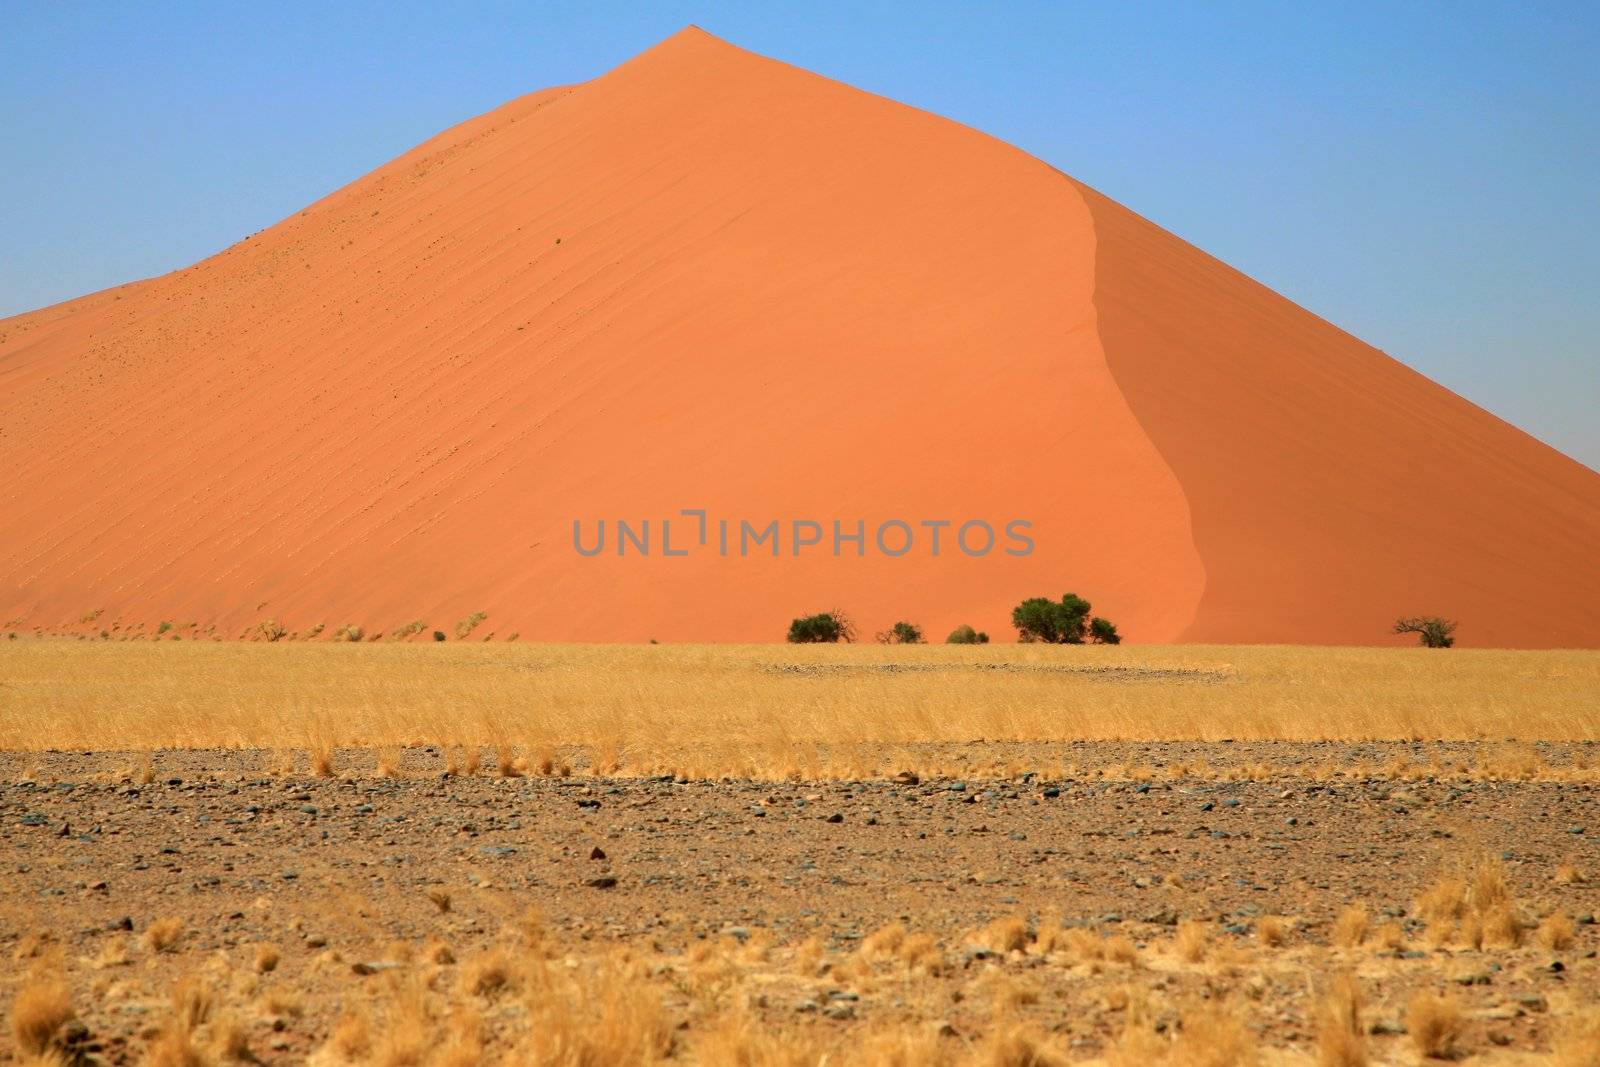 Namibia, Sossusvlei area, the Namib desert